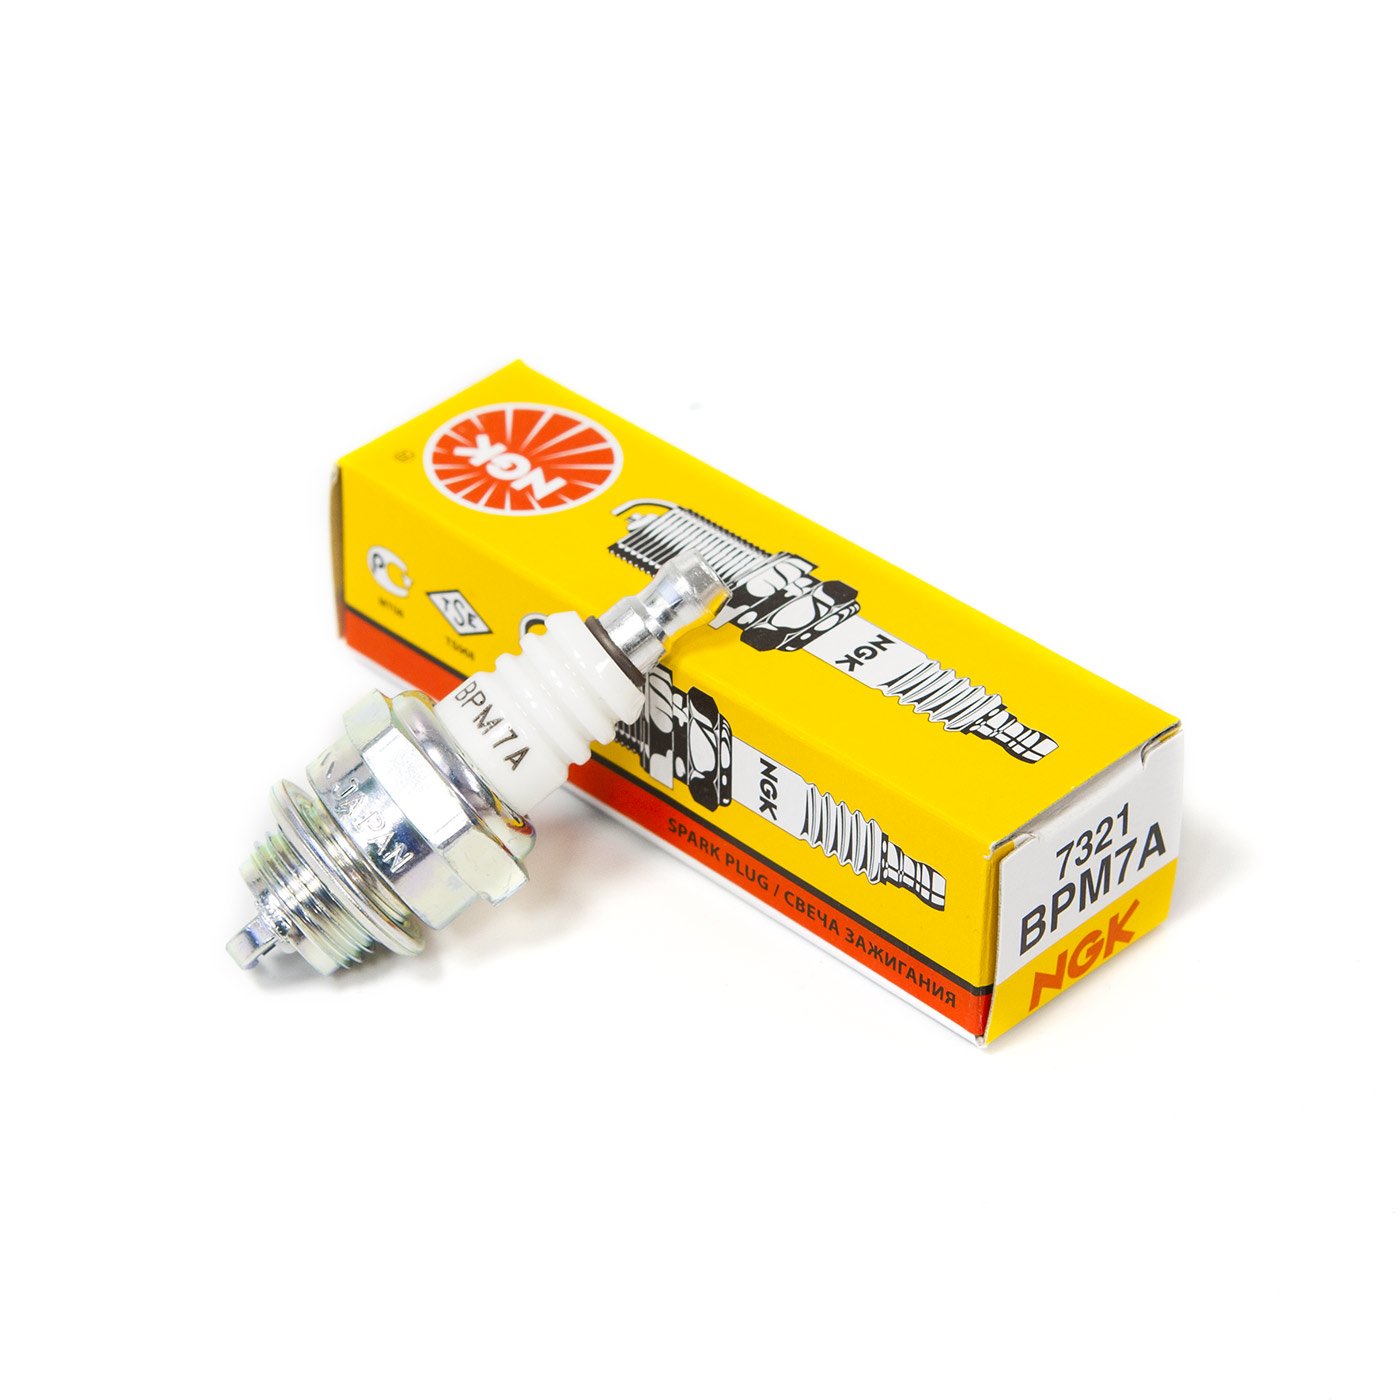 NGK 4 7321 BPM7A Standard Spark Plug 